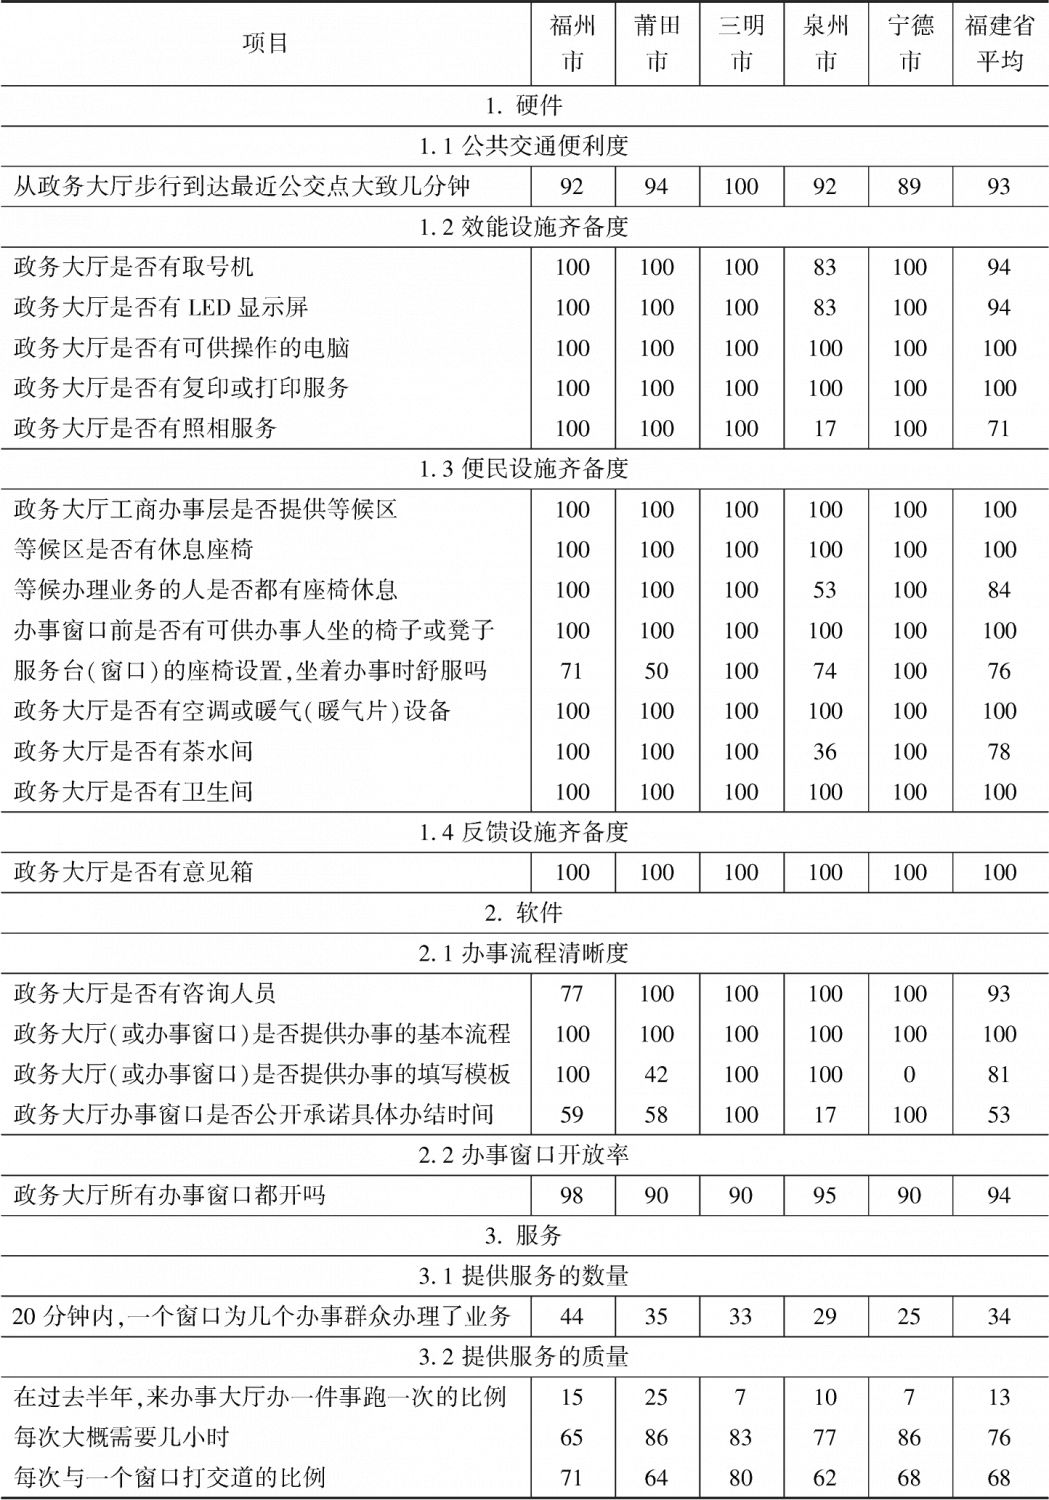 附表4-7 福建省政务环境得分